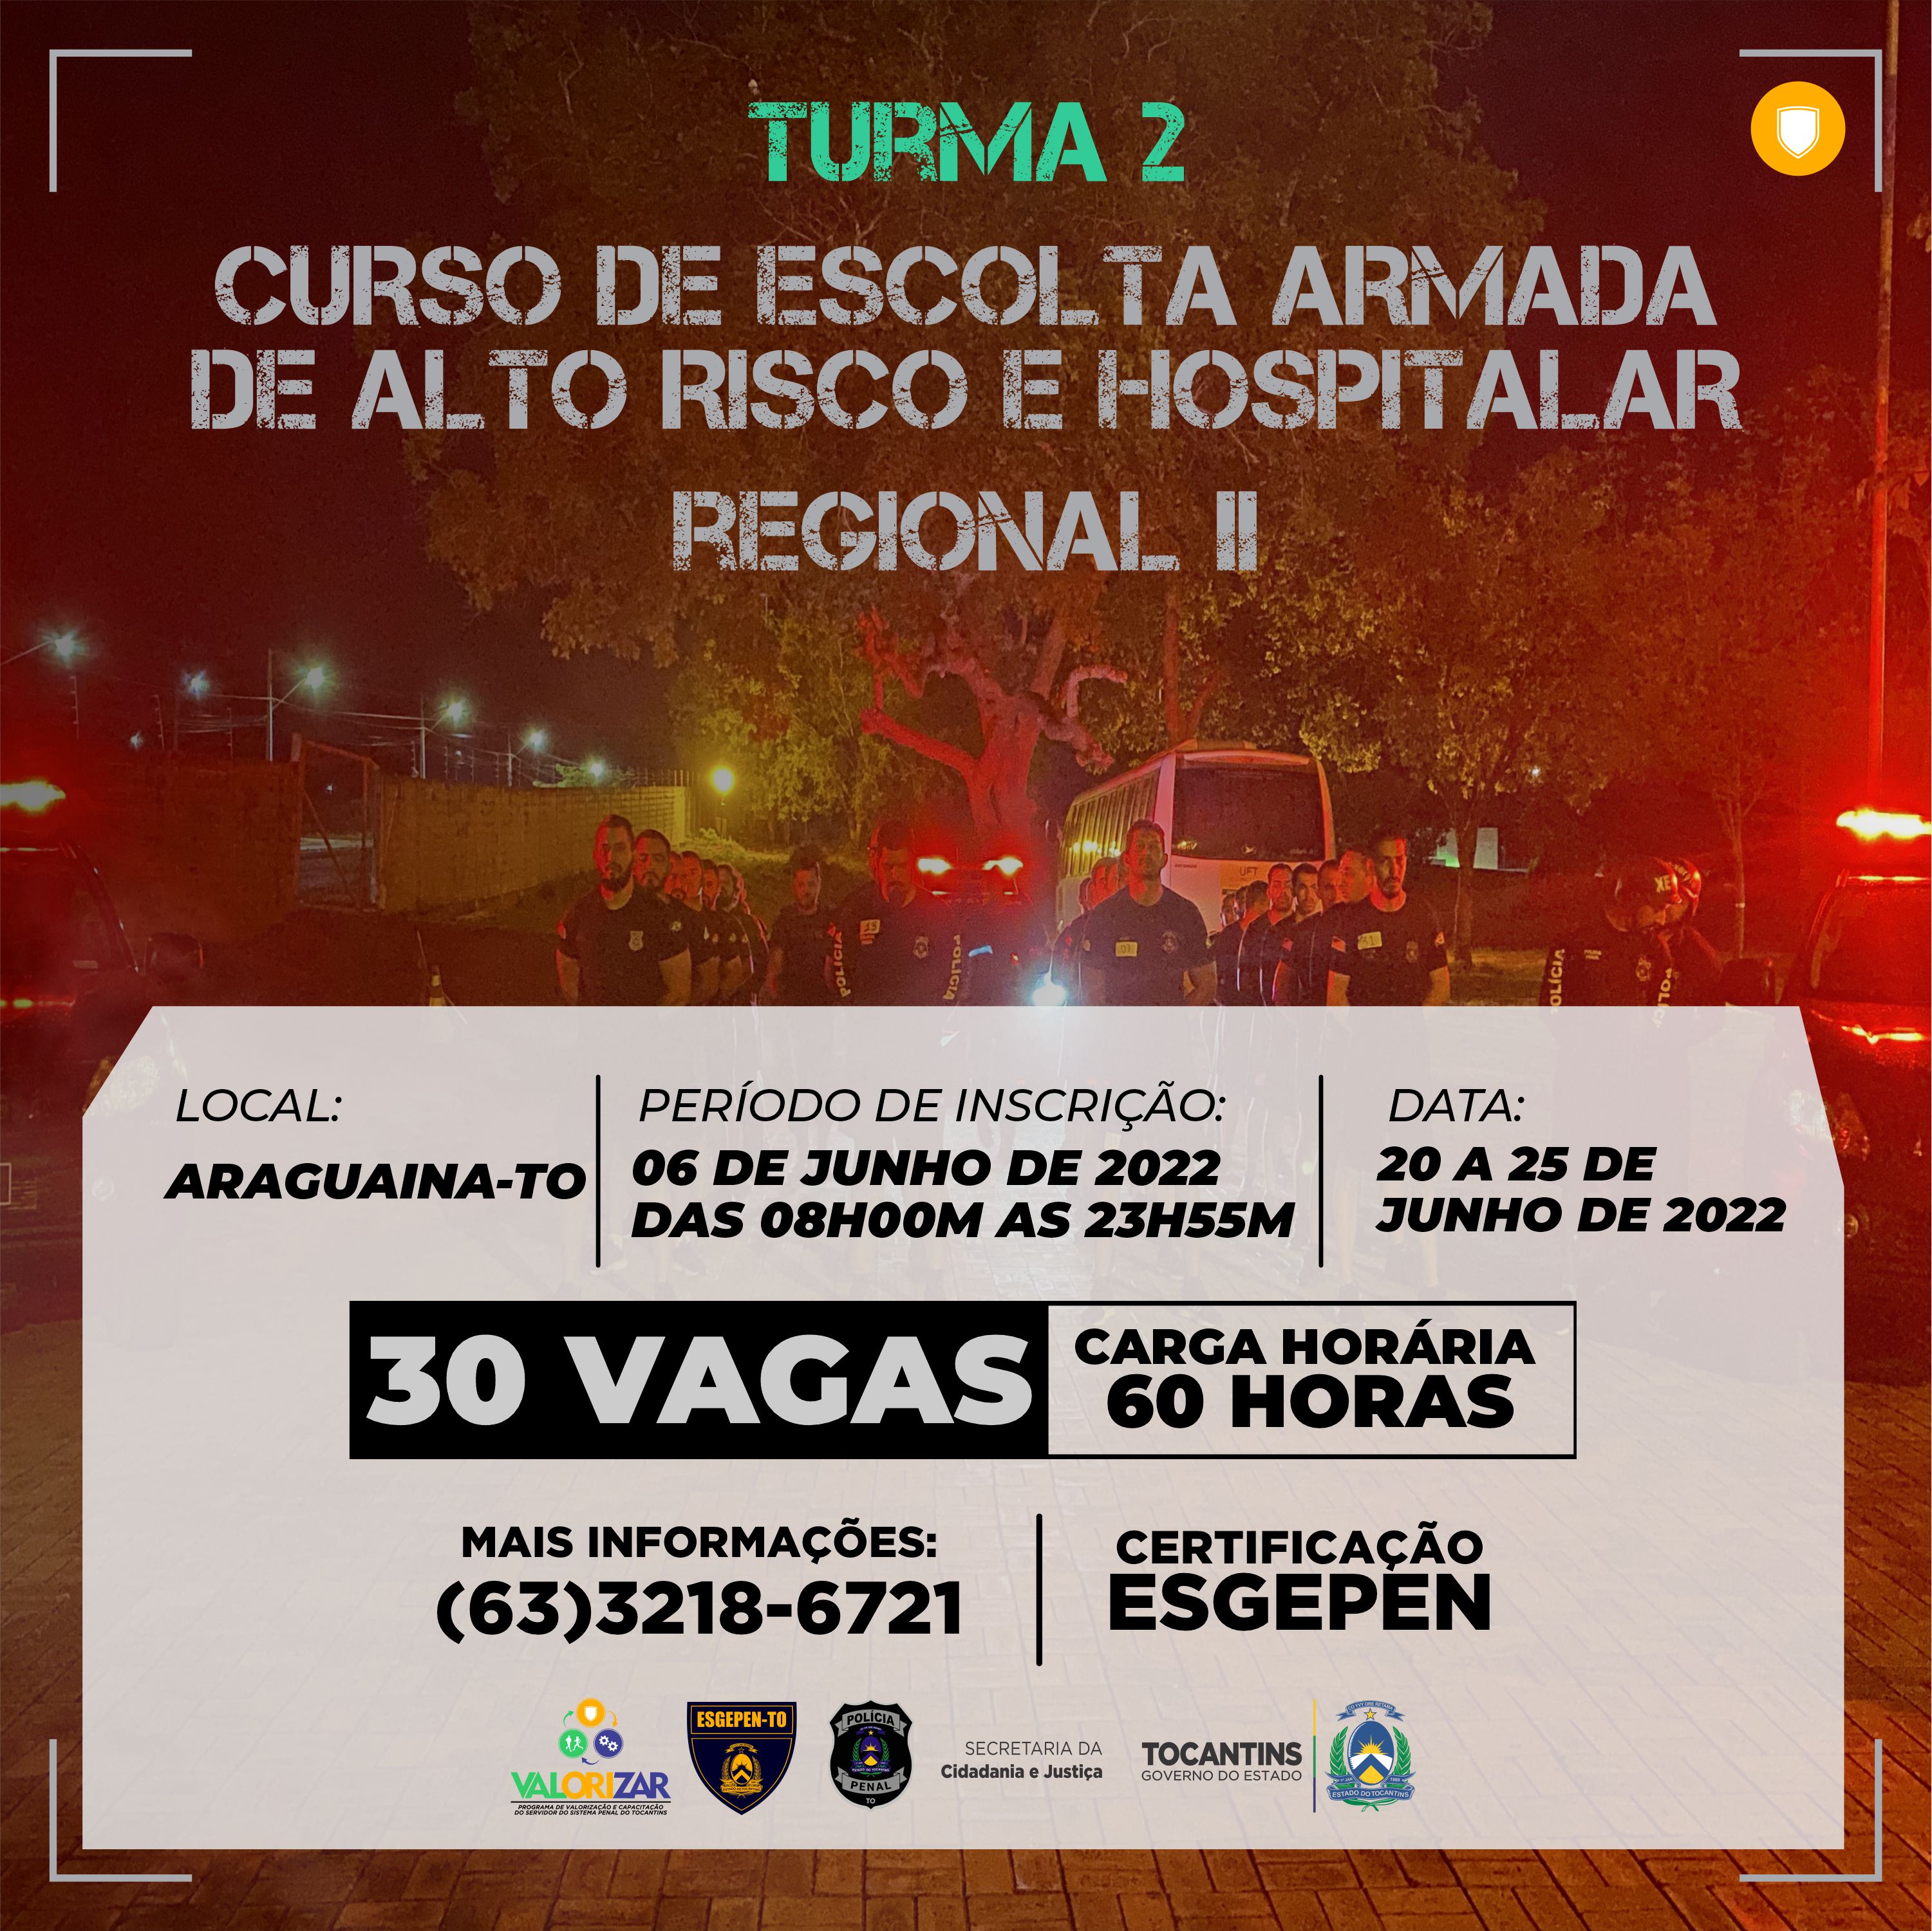 CURSO DE ESCOLTA ARMADA DE ALTO RISCO E HOSPITALAR - CEAARH - TURMA 2